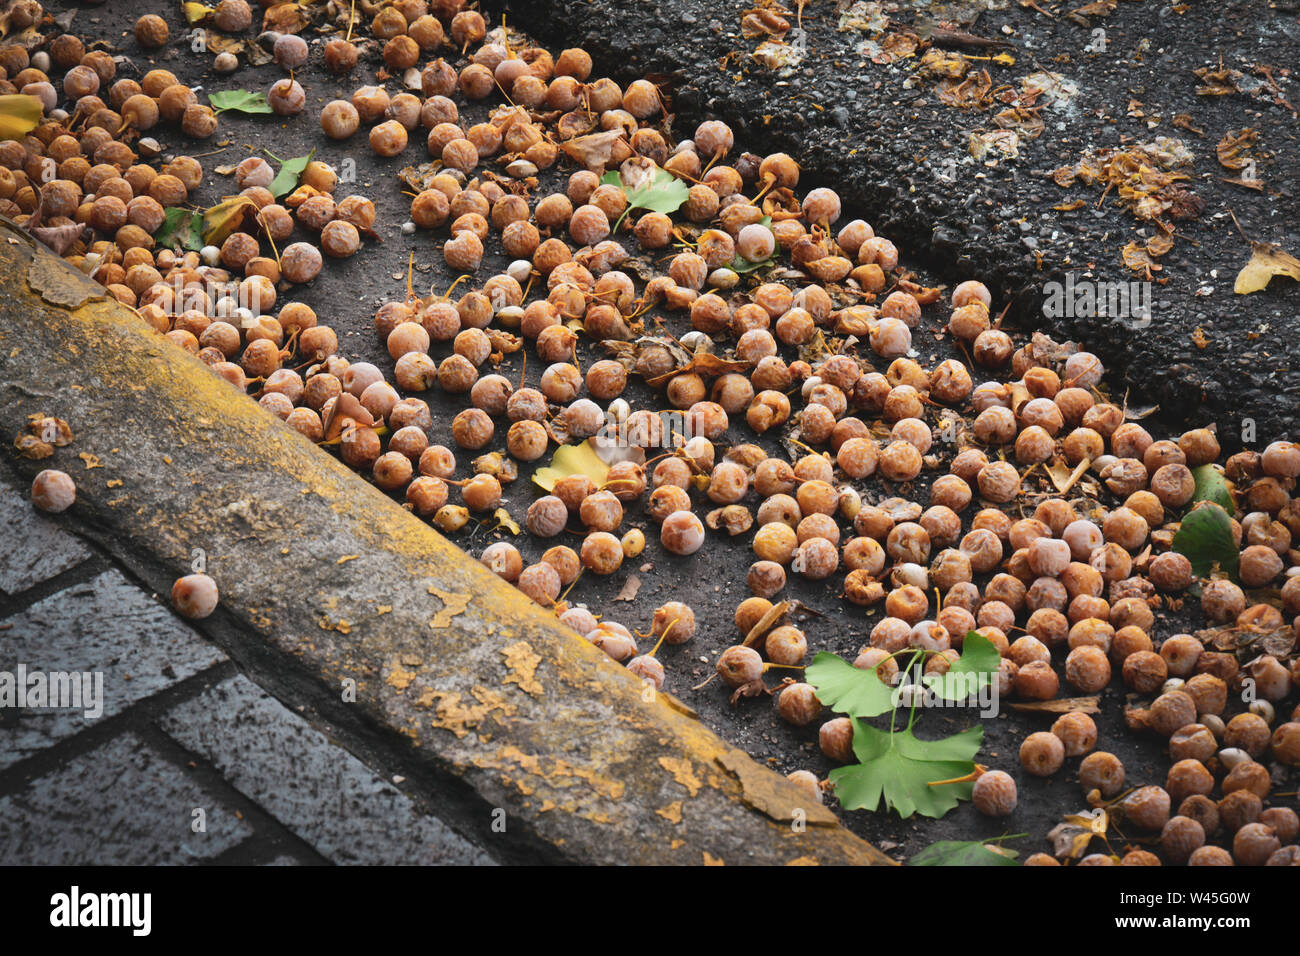 Caduto surmature susine da un albero in gronda di una strada di città, STATI UNITI D'AMERICA Foto Stock